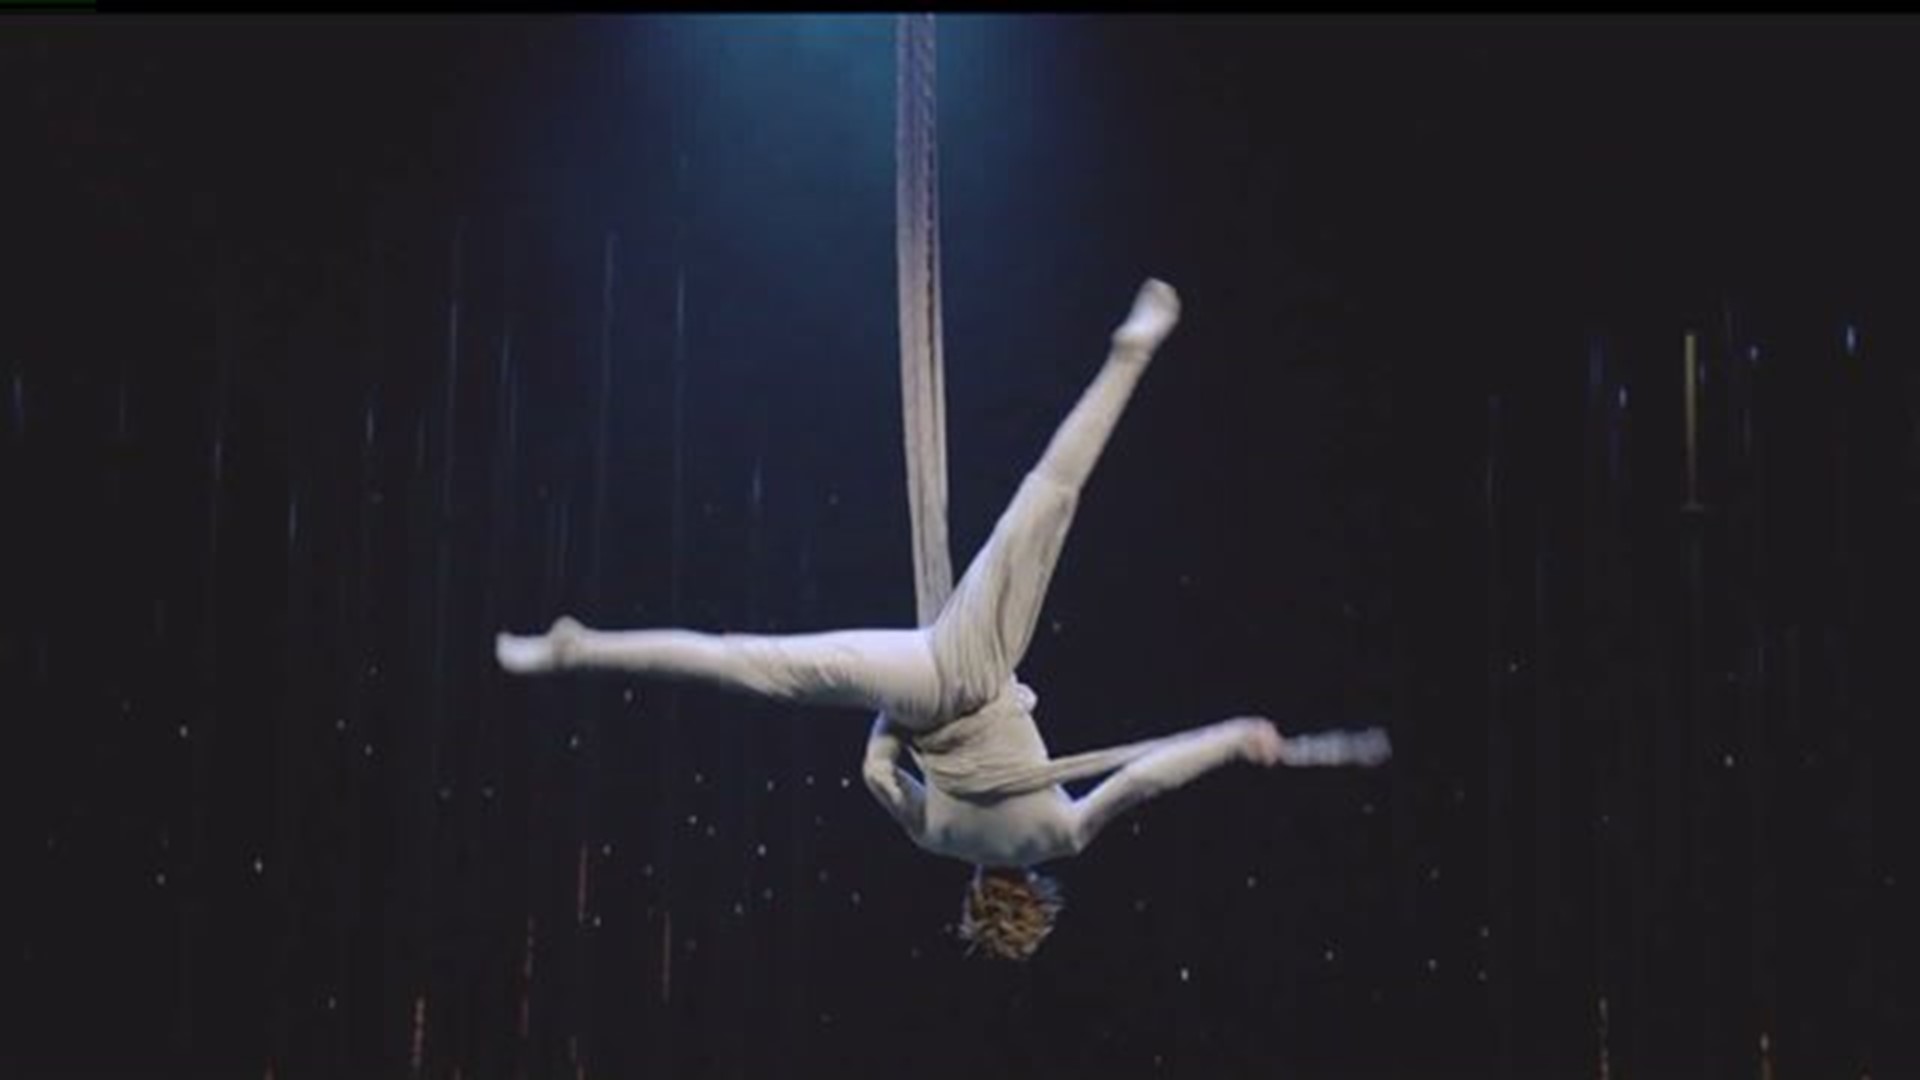 Cirque du Soleil opening night